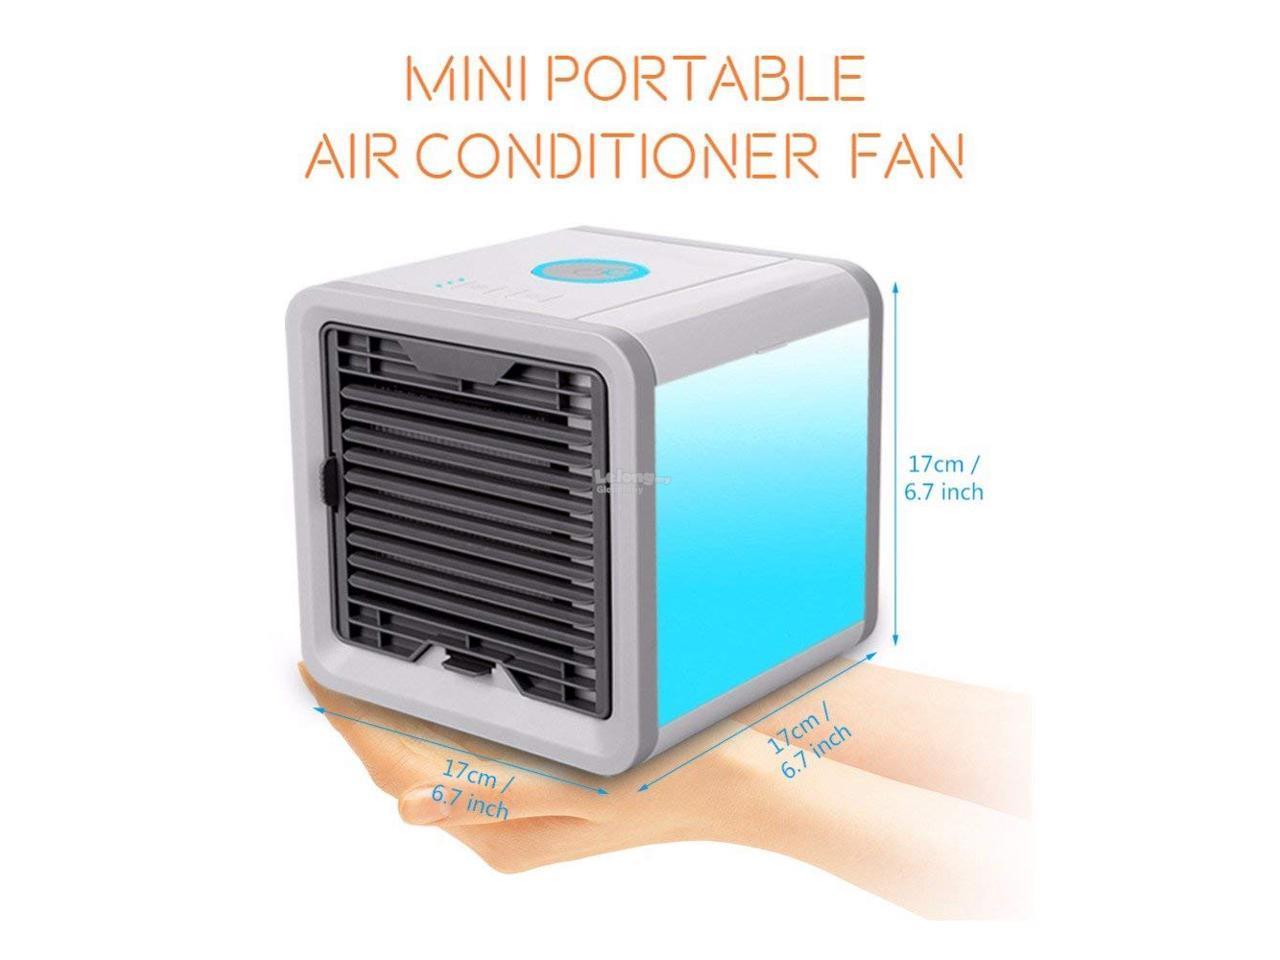 Mini Portable Air Conditioner,Cooli (end 12/30/2018 5:52 PM)